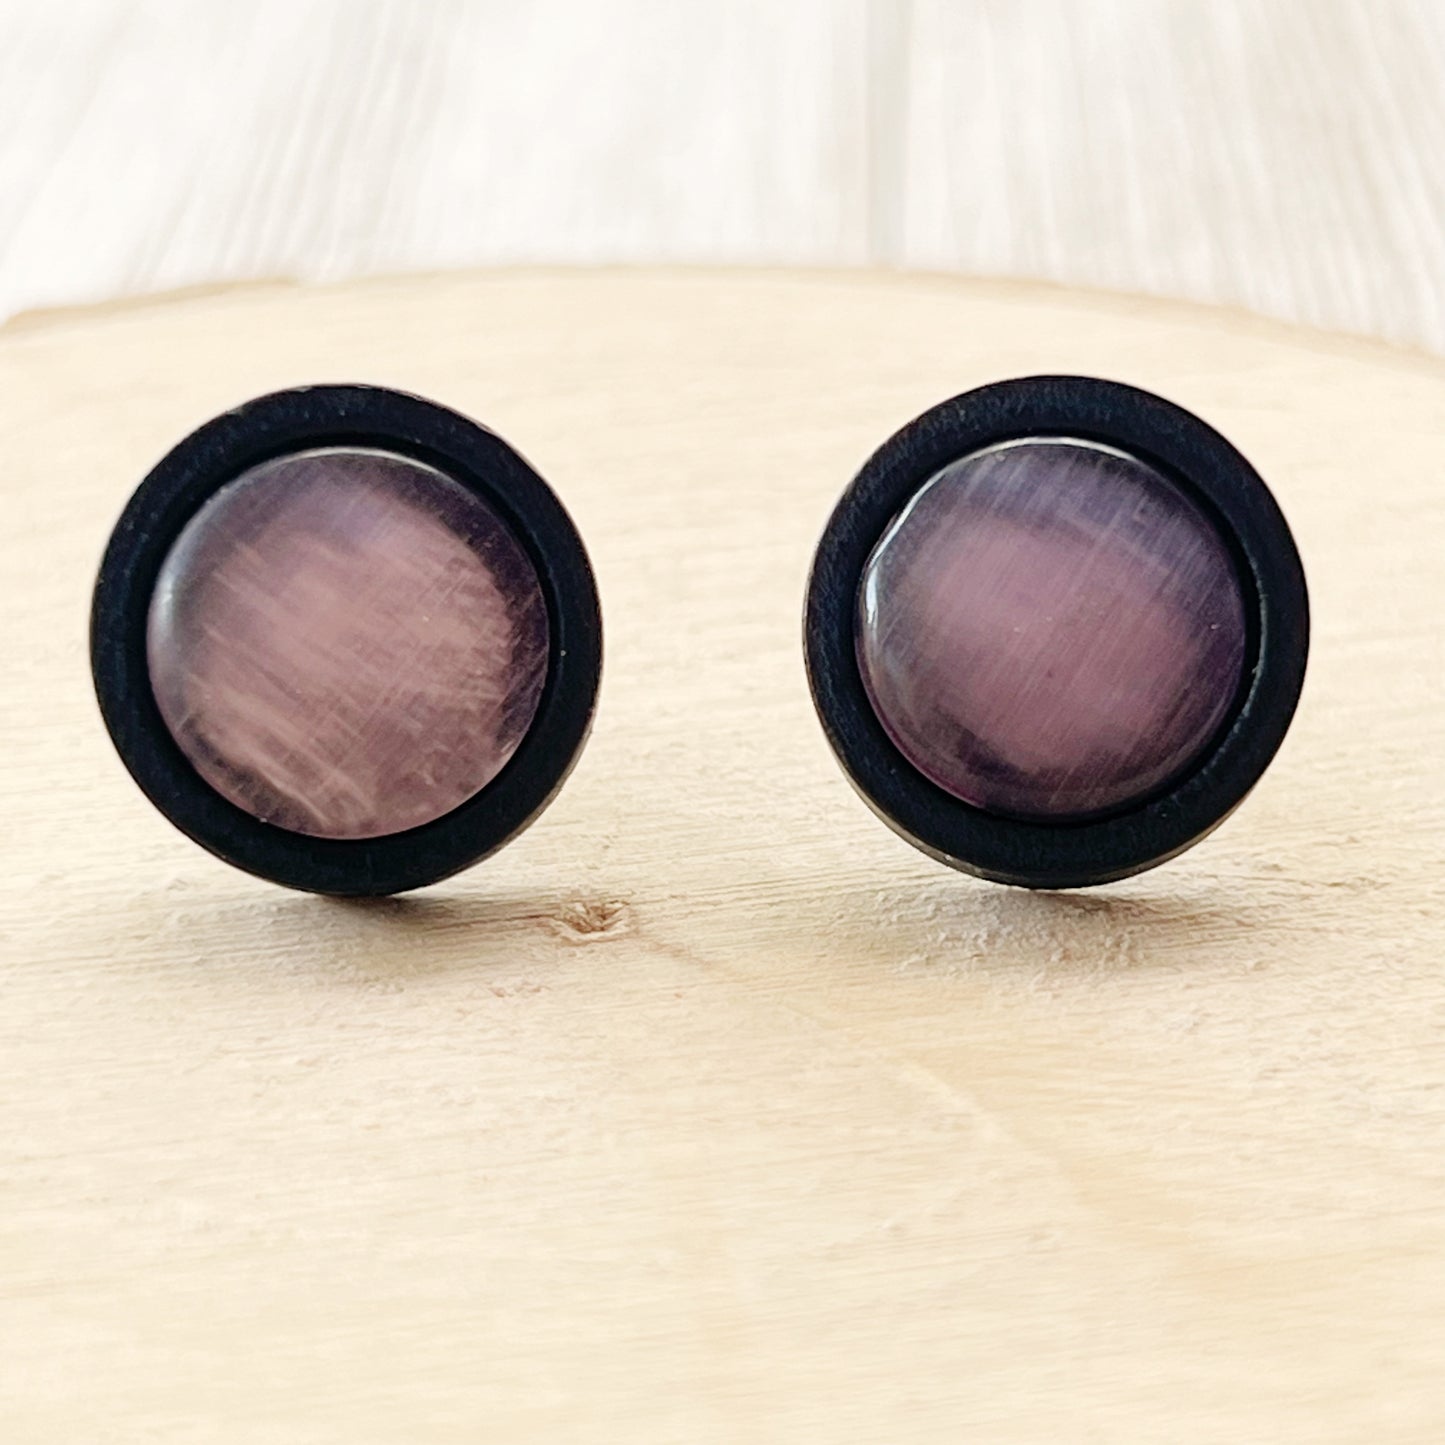 Purple Glass Black Wood Unisex Stud Earrings - Stylish & Versatile Accessories